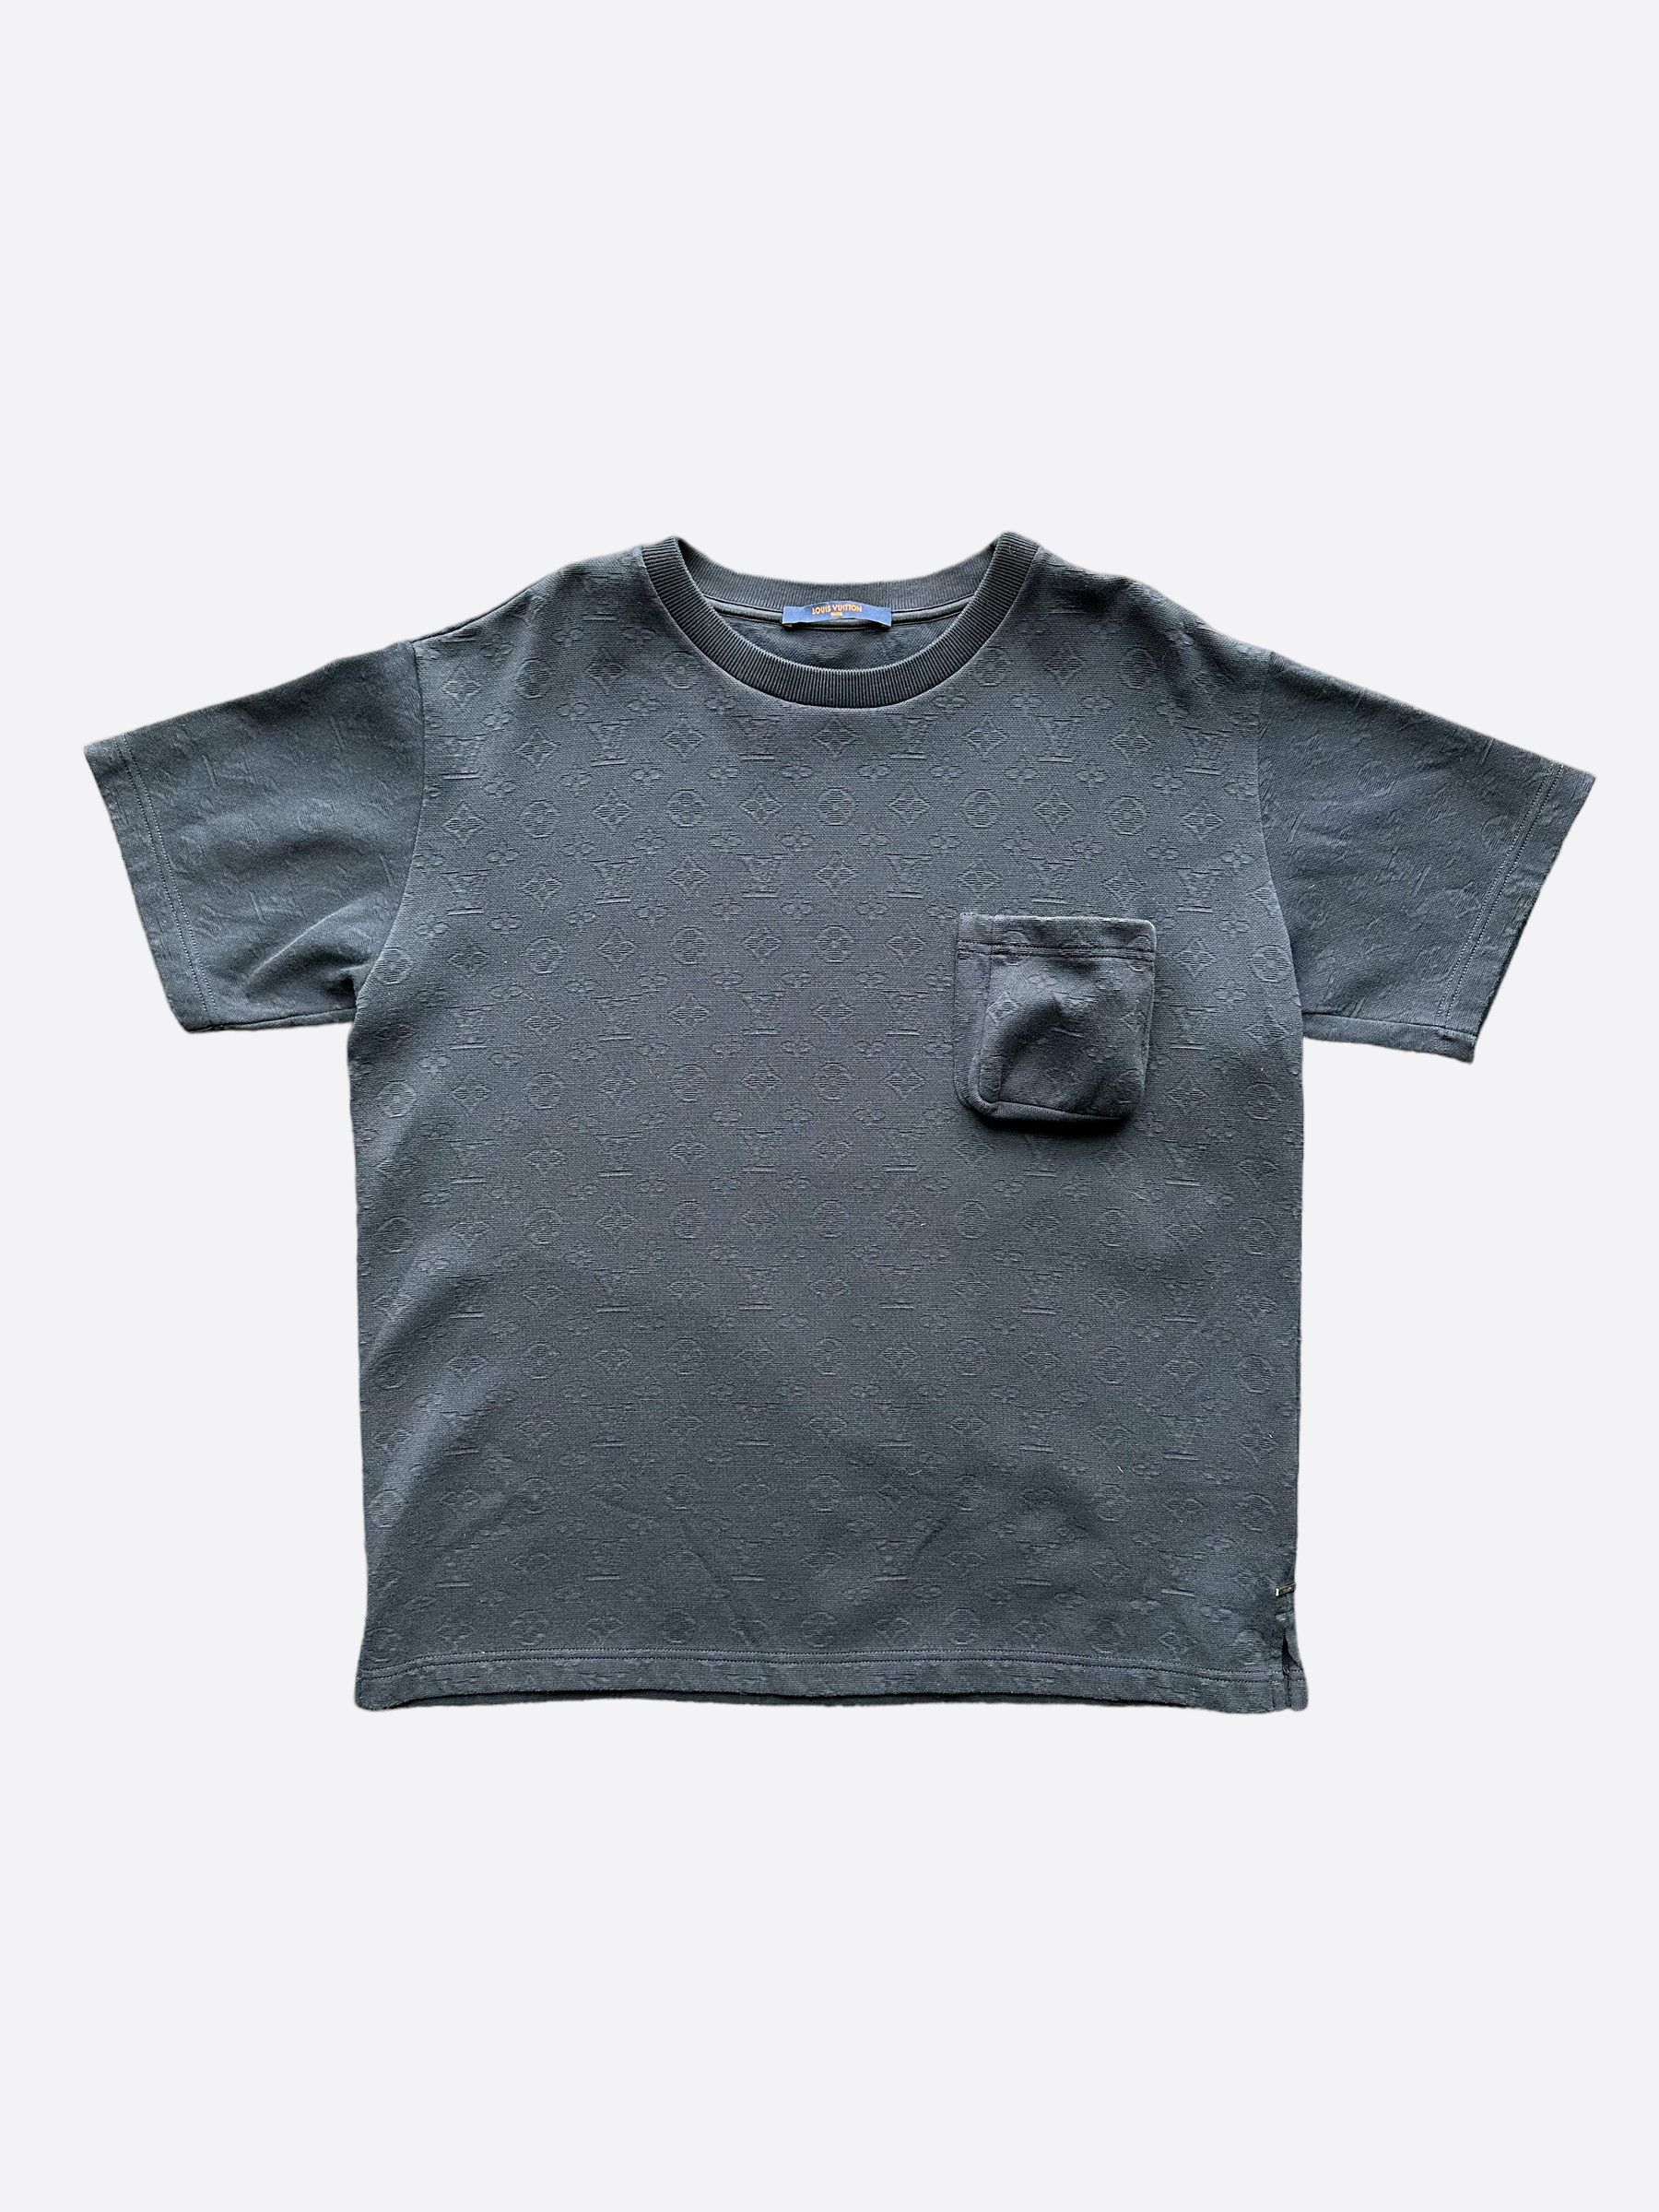 Louis Vuitton Black Monogram Gradient T-shirt Size Large. Retails